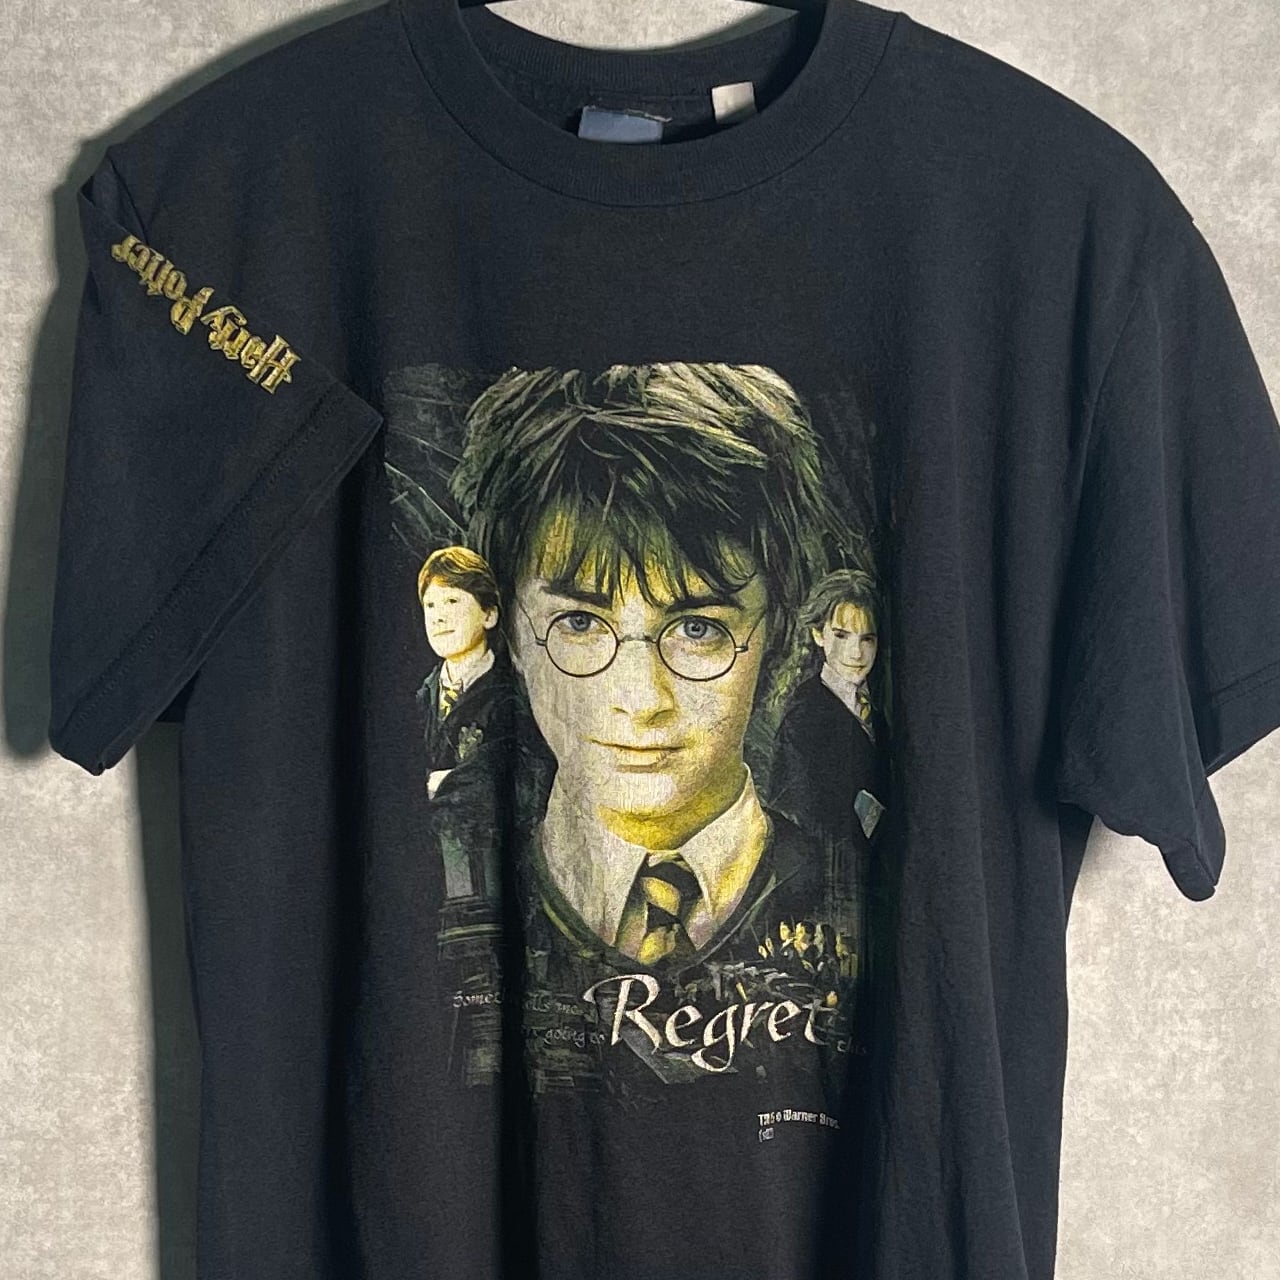 90s Harry Potter vintage shirt ハリーポッター